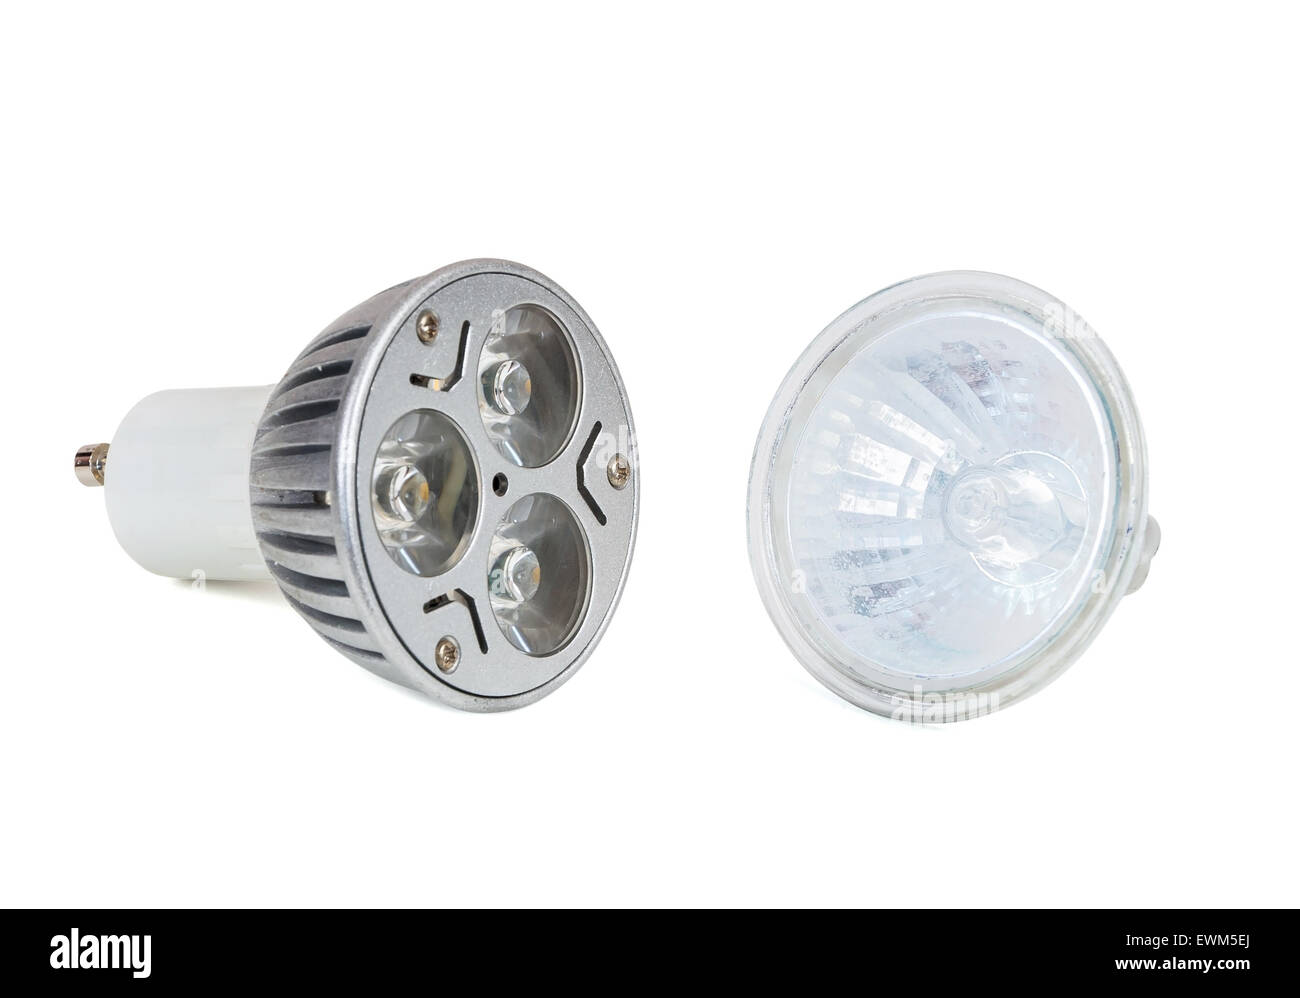 Ampoule LED et halogène isolé sur fond blanc avec clipping path Banque D'Images